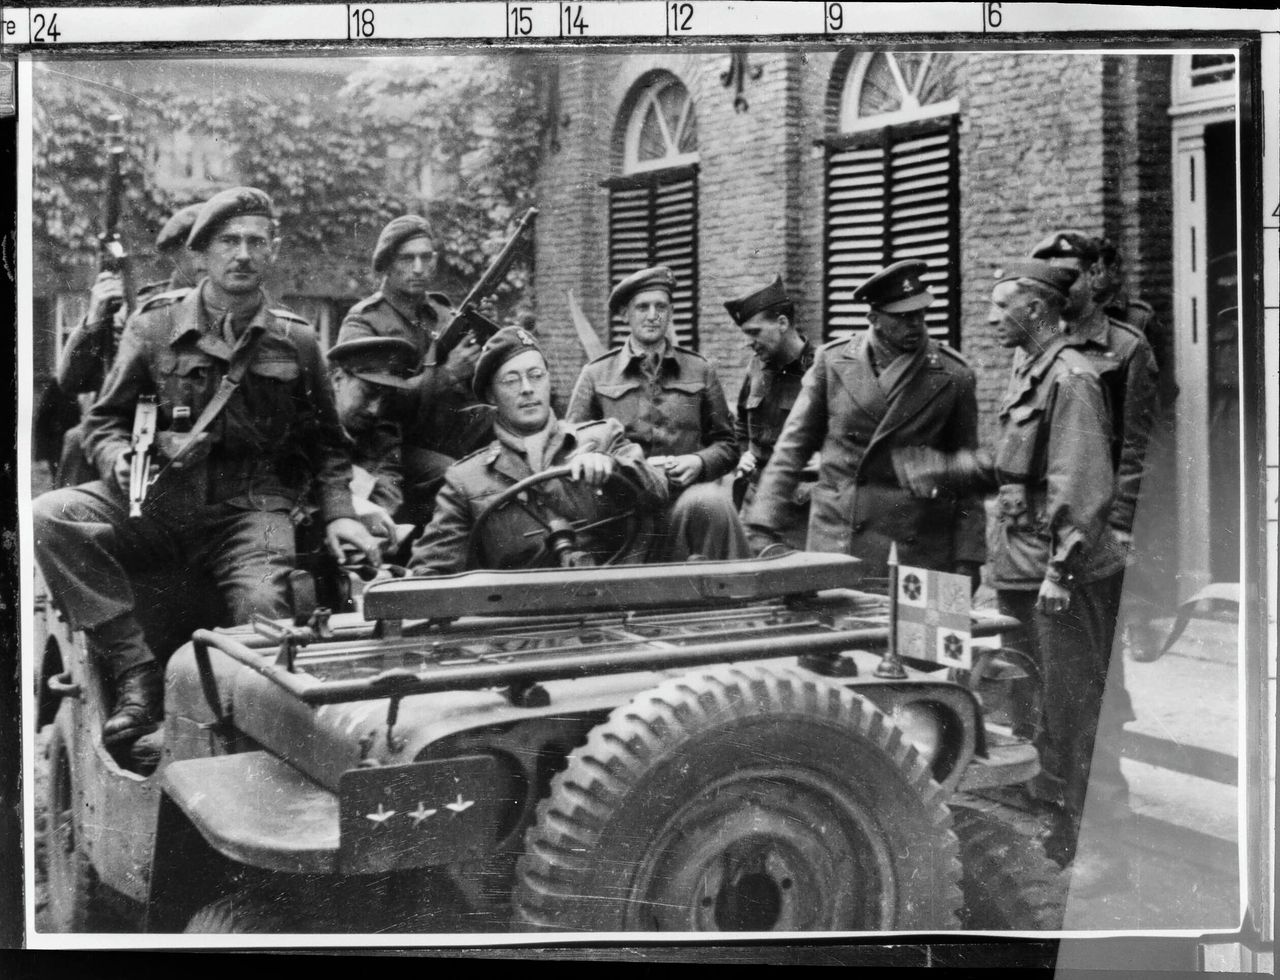 Prins Bernhard in een jeep omringd door officieren, waarschijnlijk in Nijmegen.